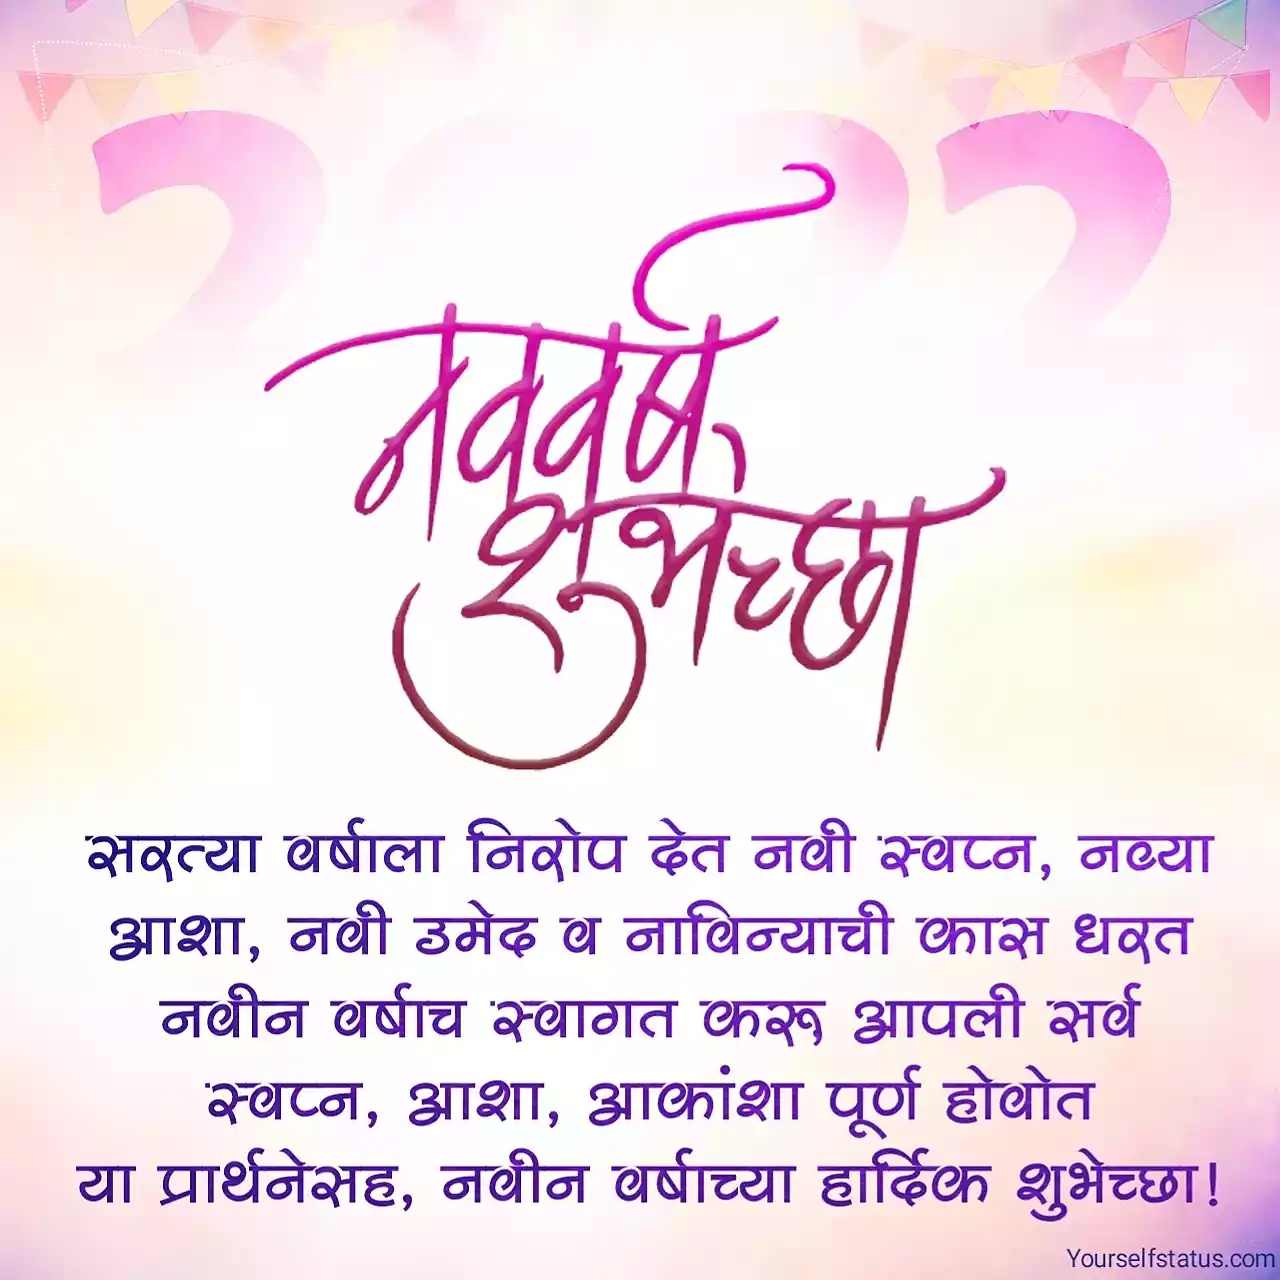 Happy new year wishes in marathi